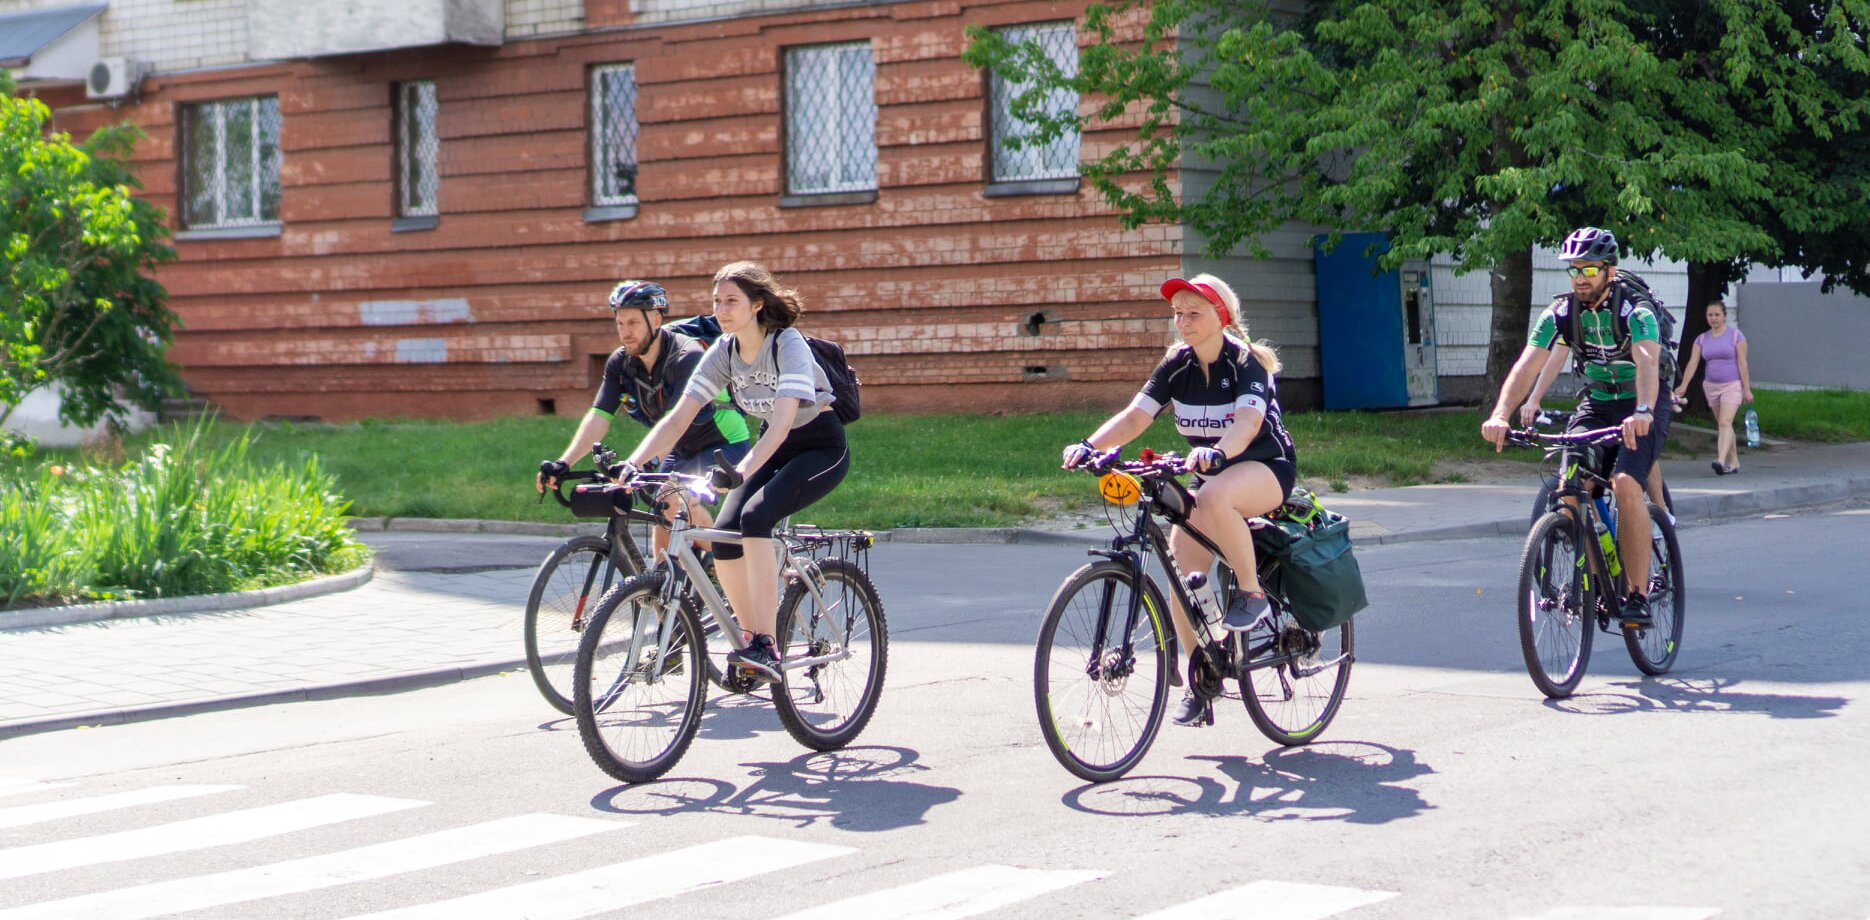 Двоє жінок та двоє чоловіків на велосипедах рухається в одному напрямі